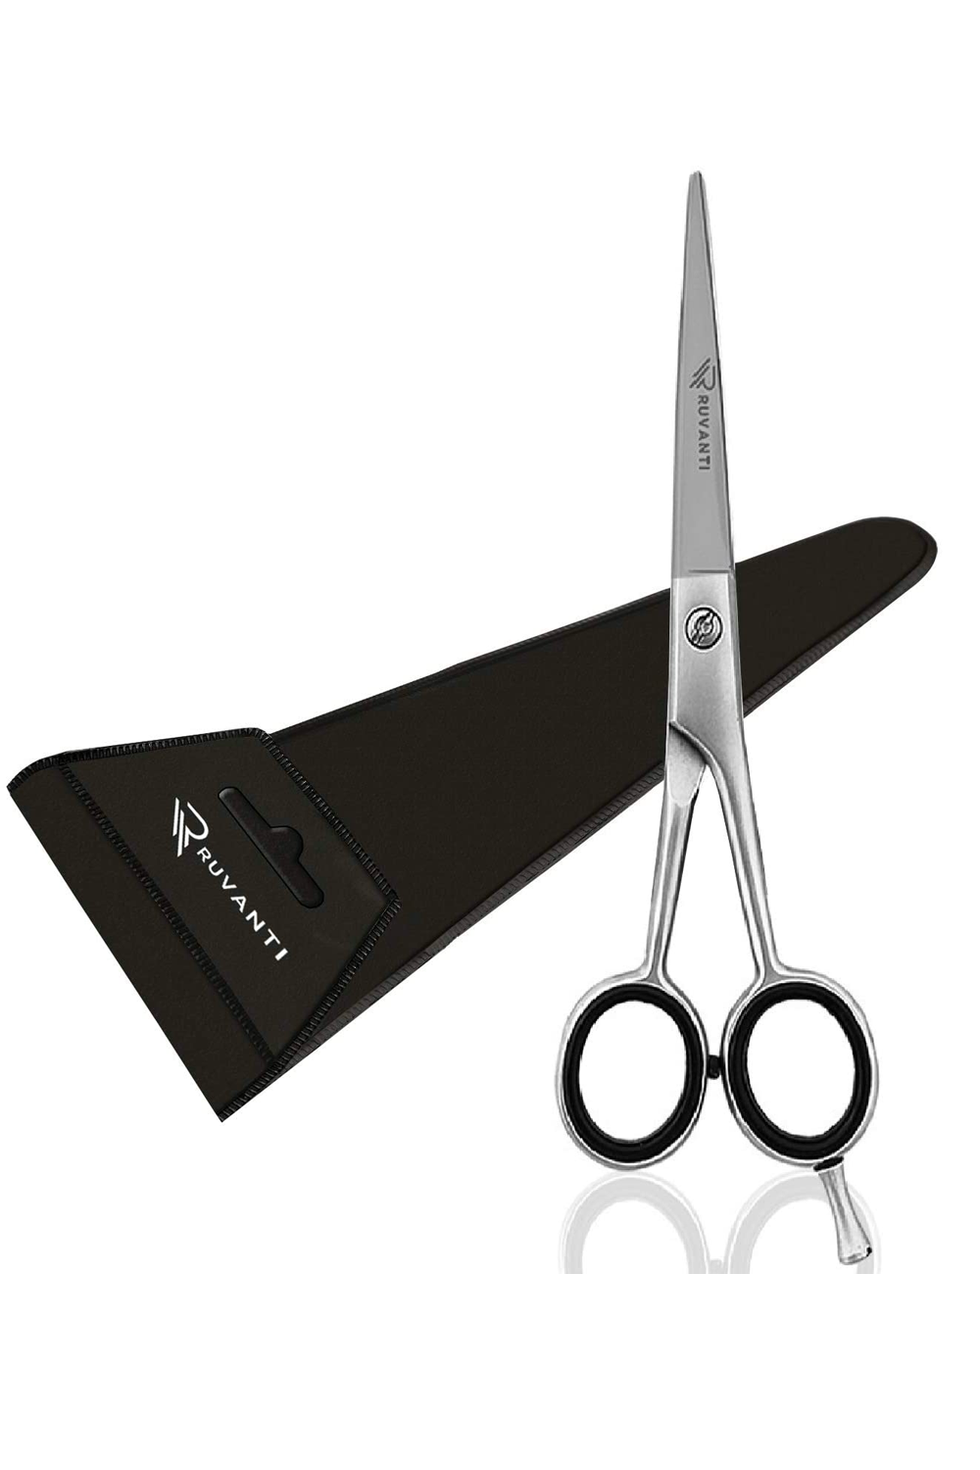 Ruvanti Professional Hair Cutting Scissors